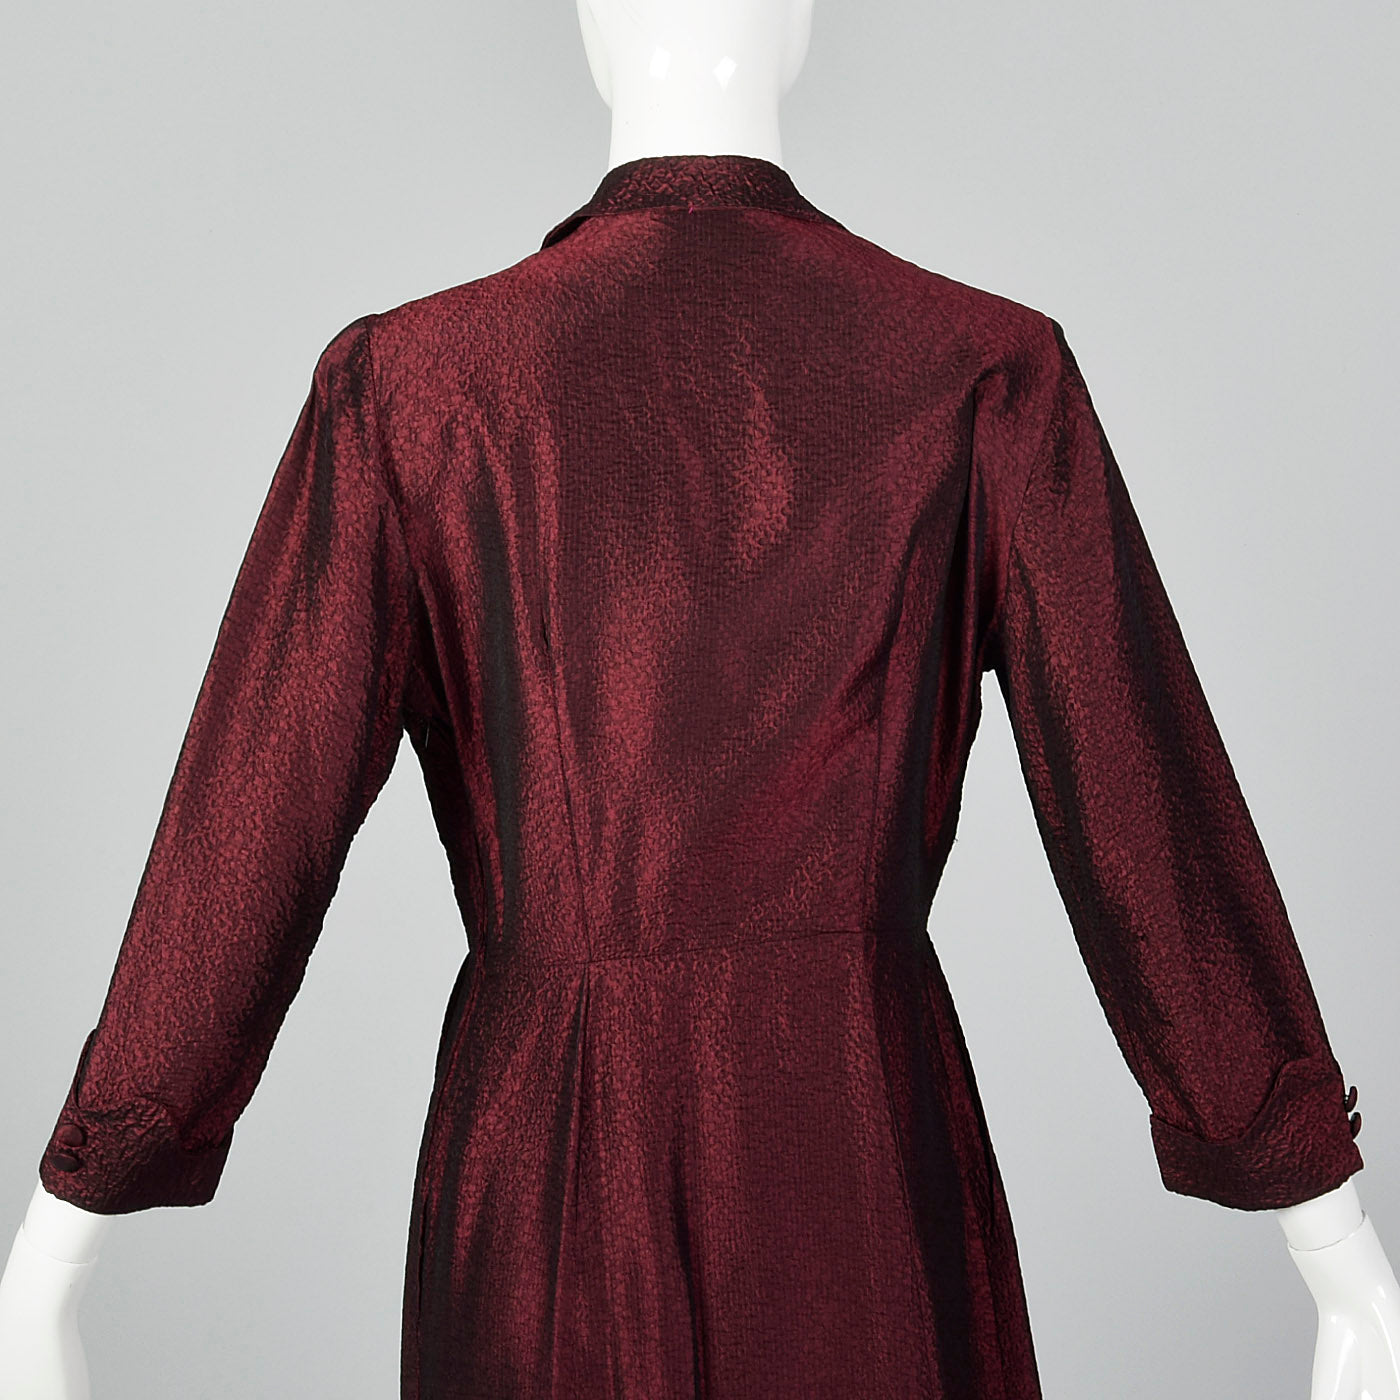 1950s Red and Black Sharkskin Plisse Dress